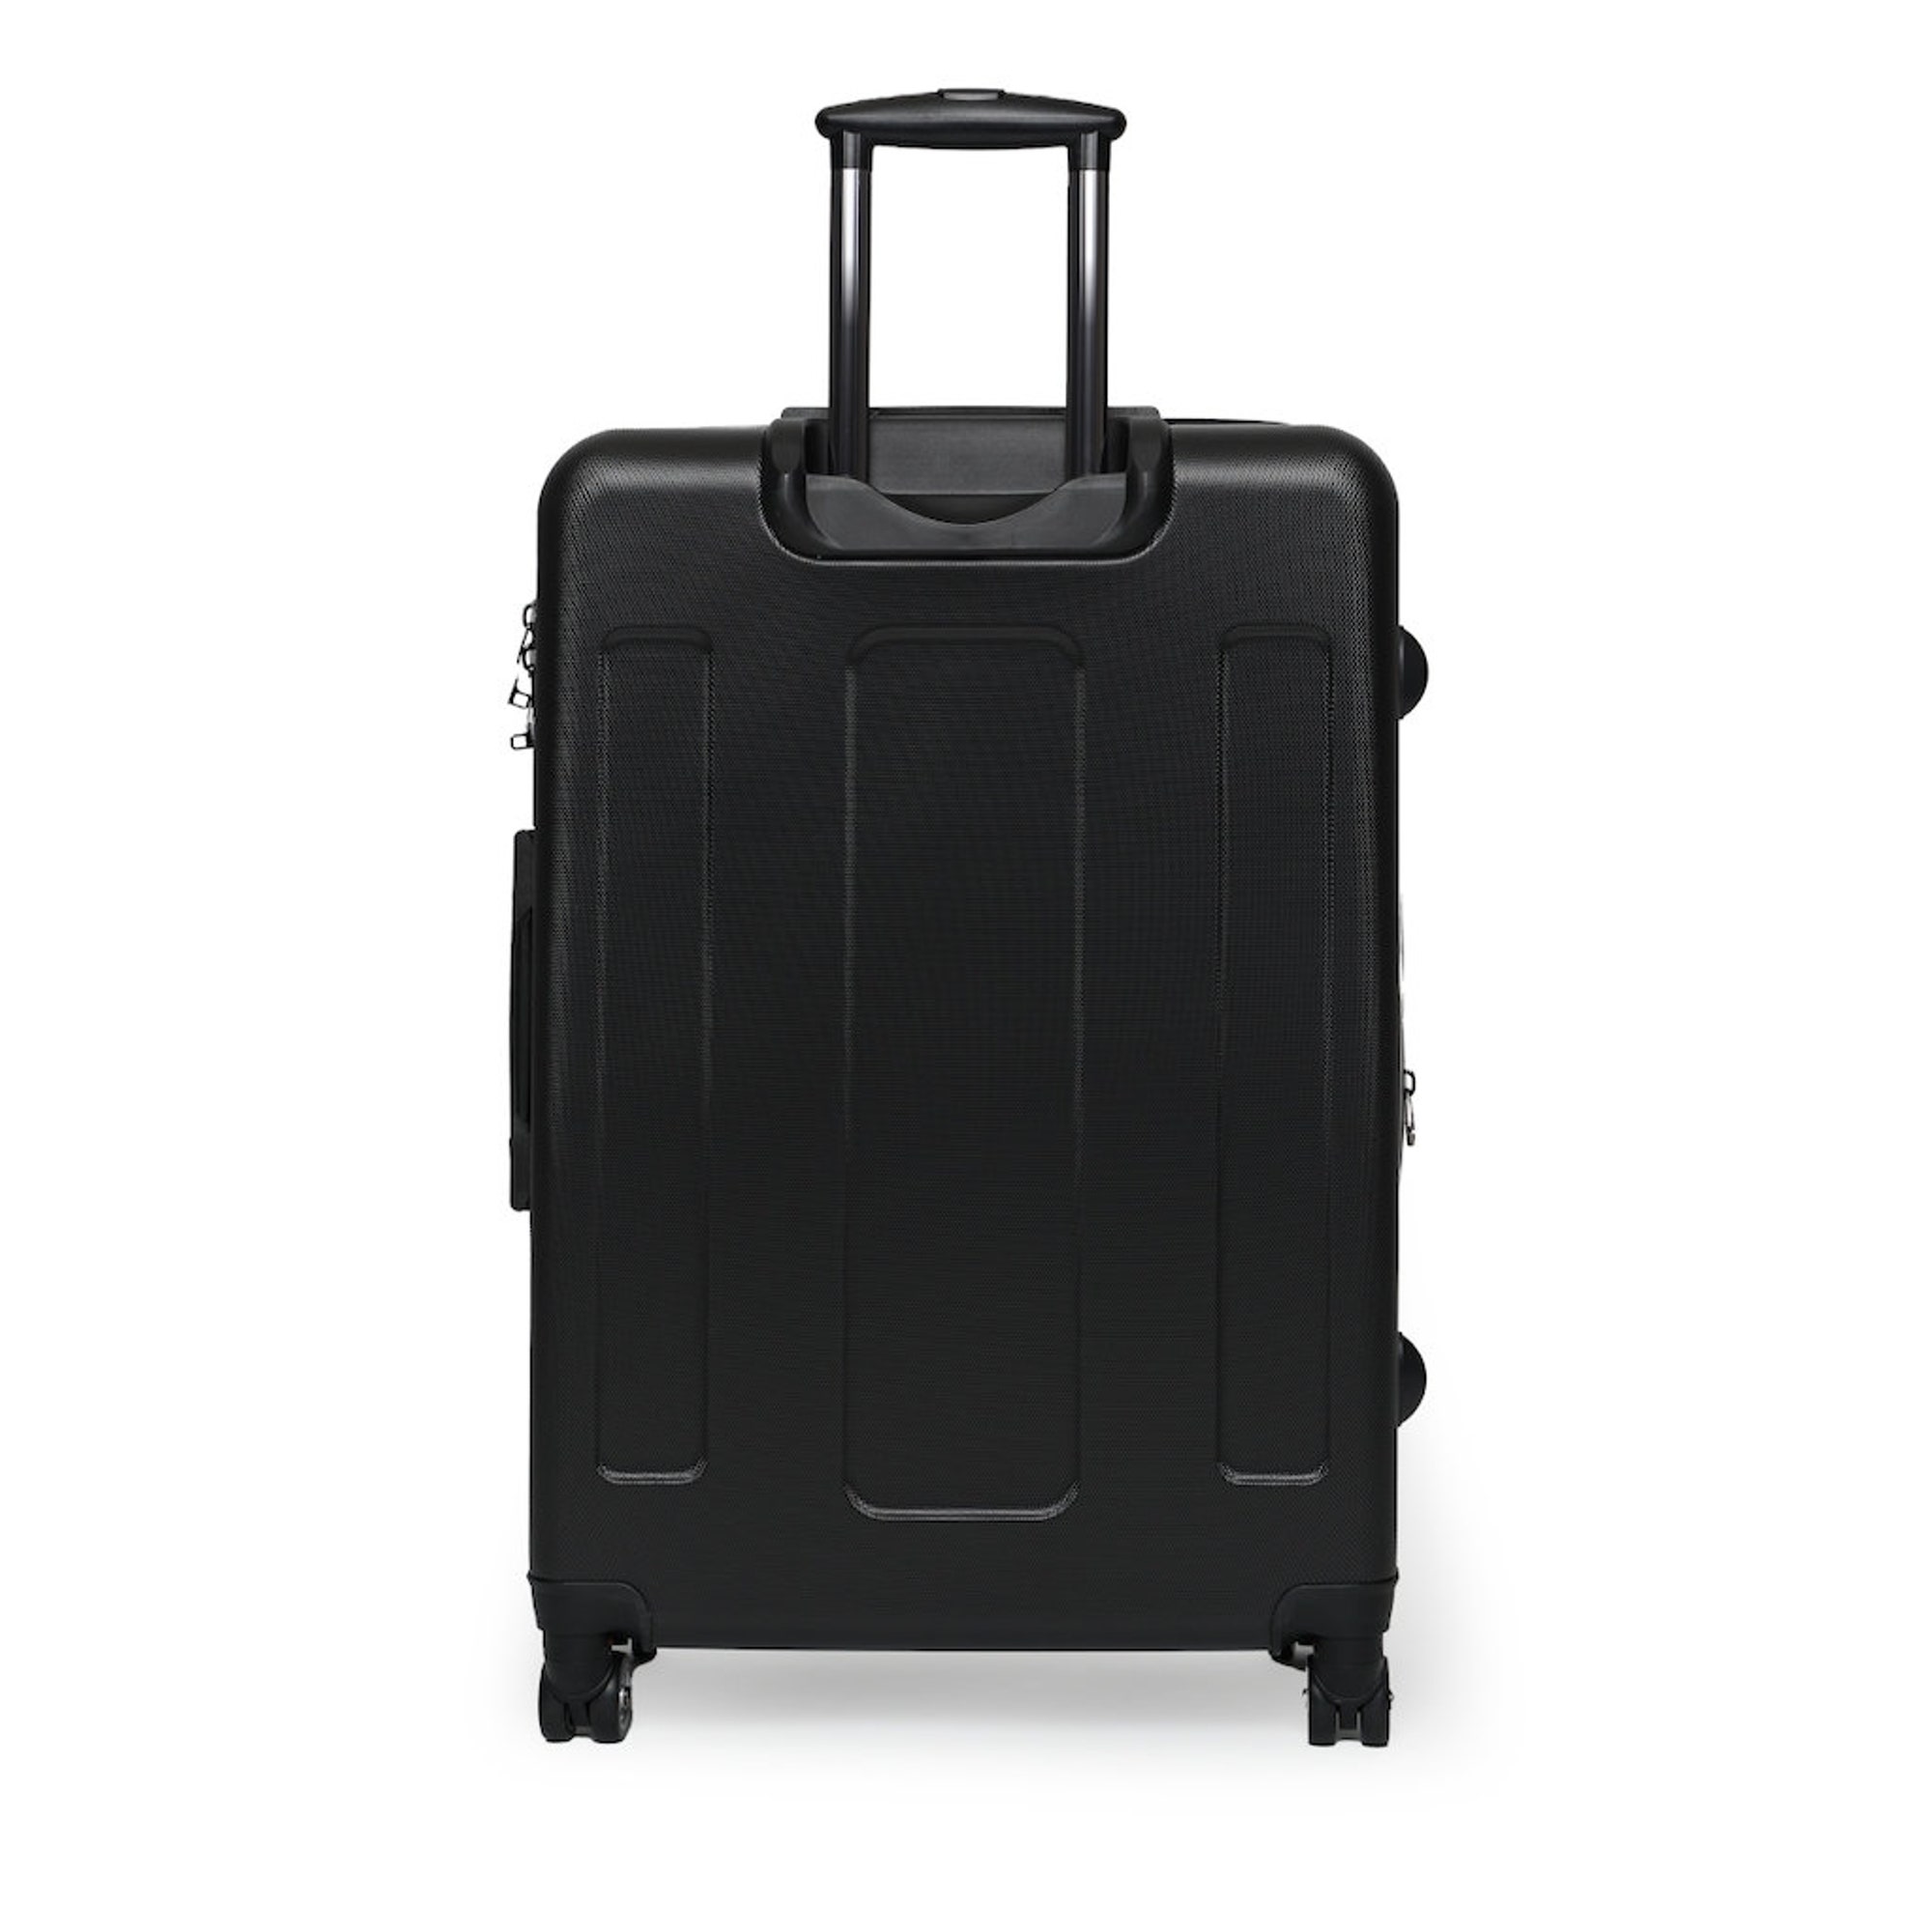 The Aruba Suitcase